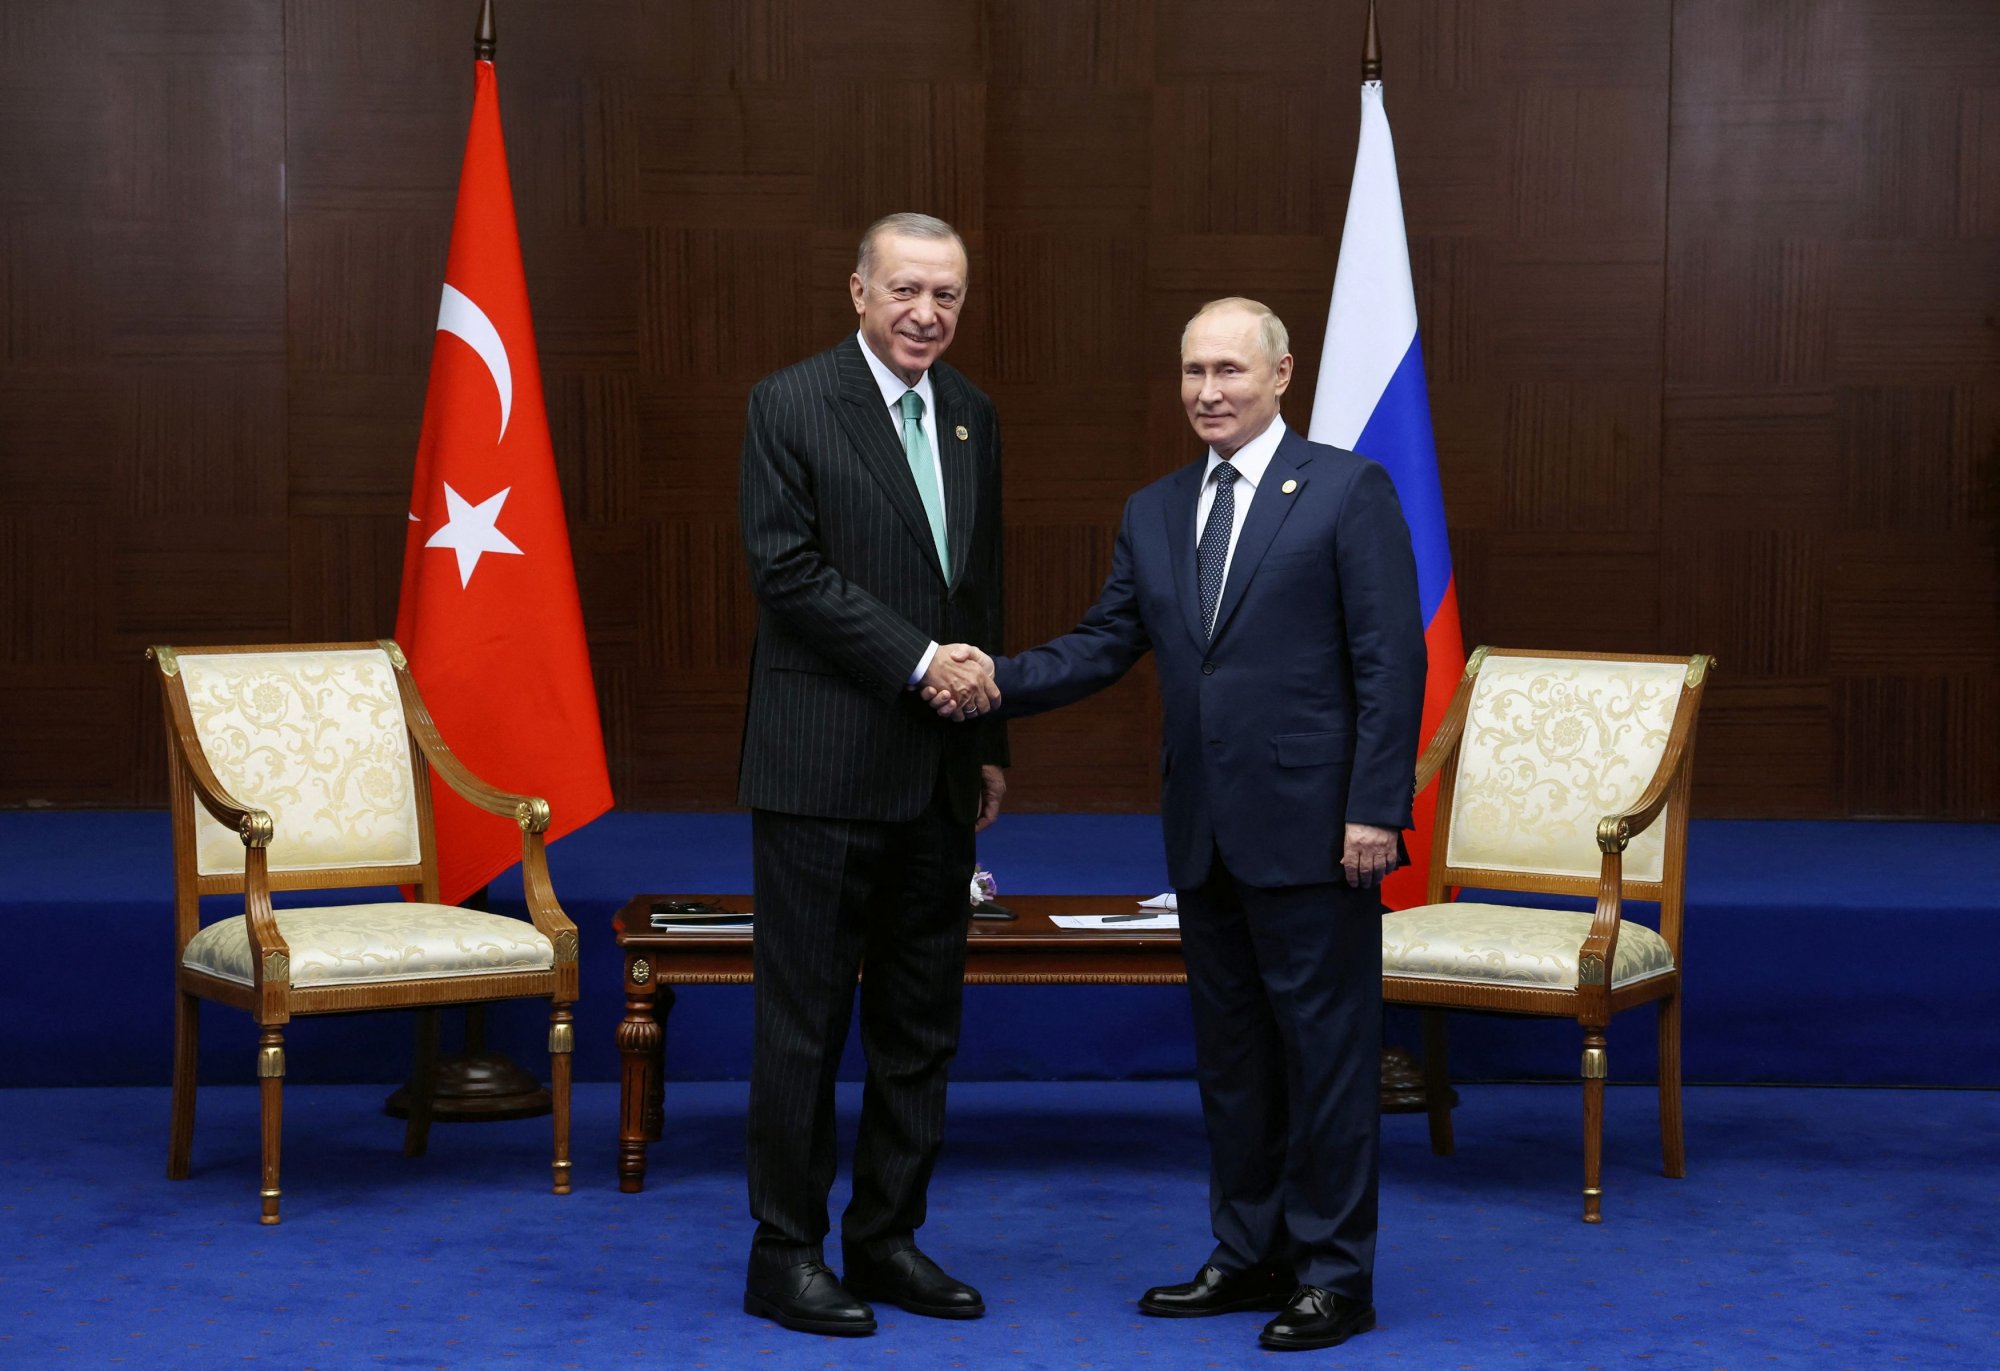 Ρετζέπ Ταγίπ Ερντογάν: Στο Σότσι ο Τούρκος πρόεδρος για συνάντηση με τον Πούτιν - Στόχος η επανέναρξη της συμφωνίας για τα σιτηρά